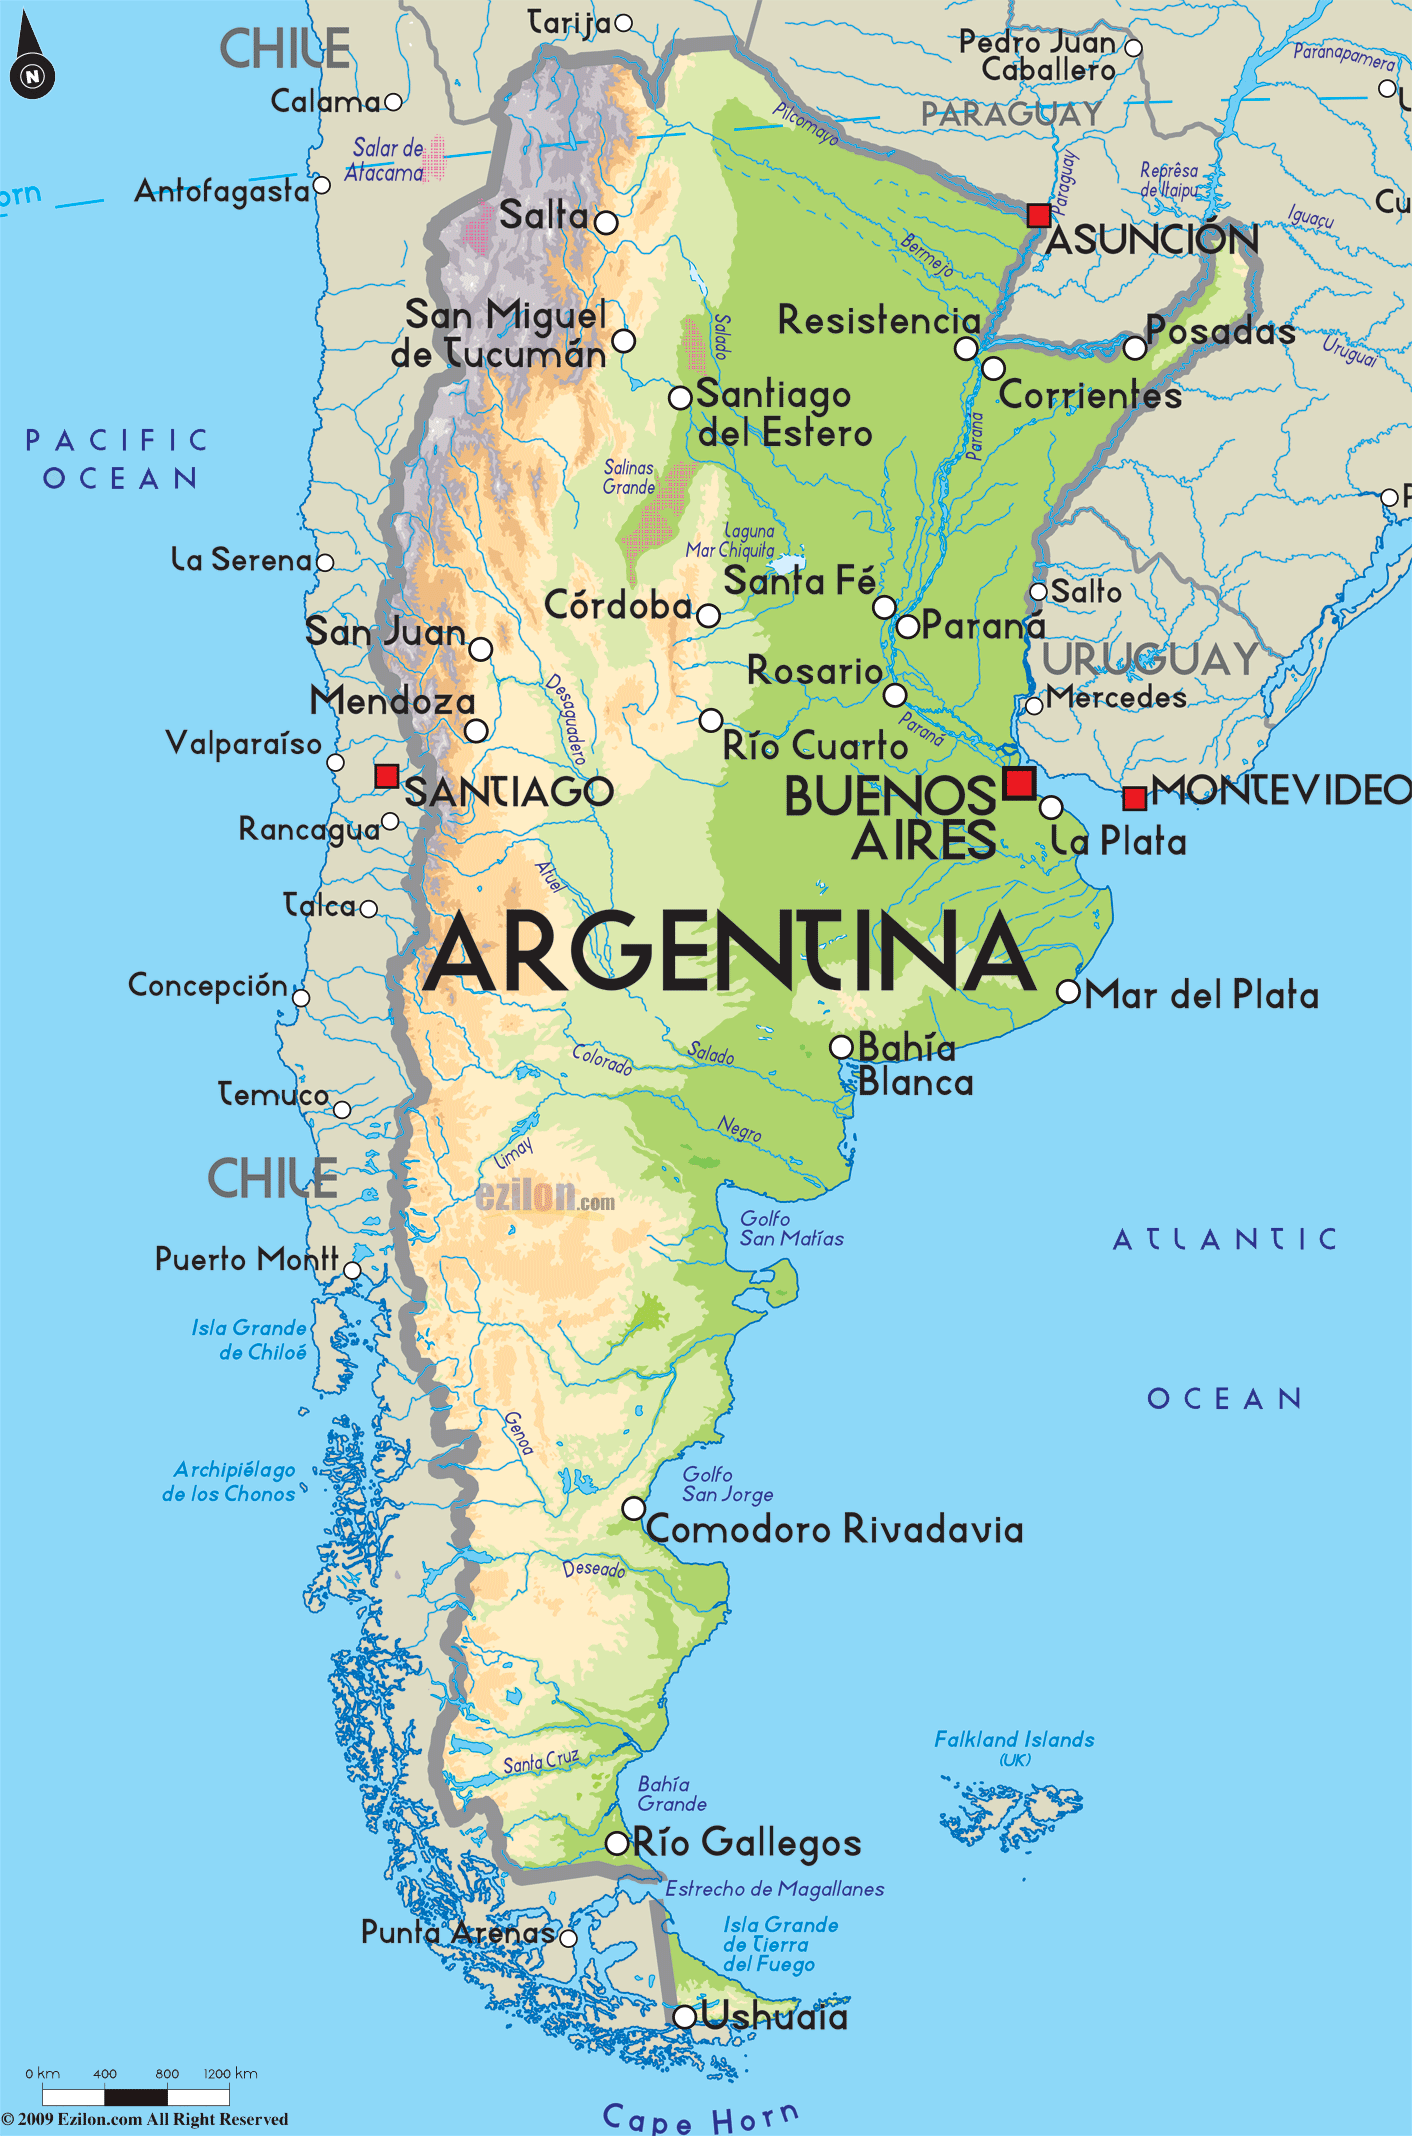 Argentinamap 